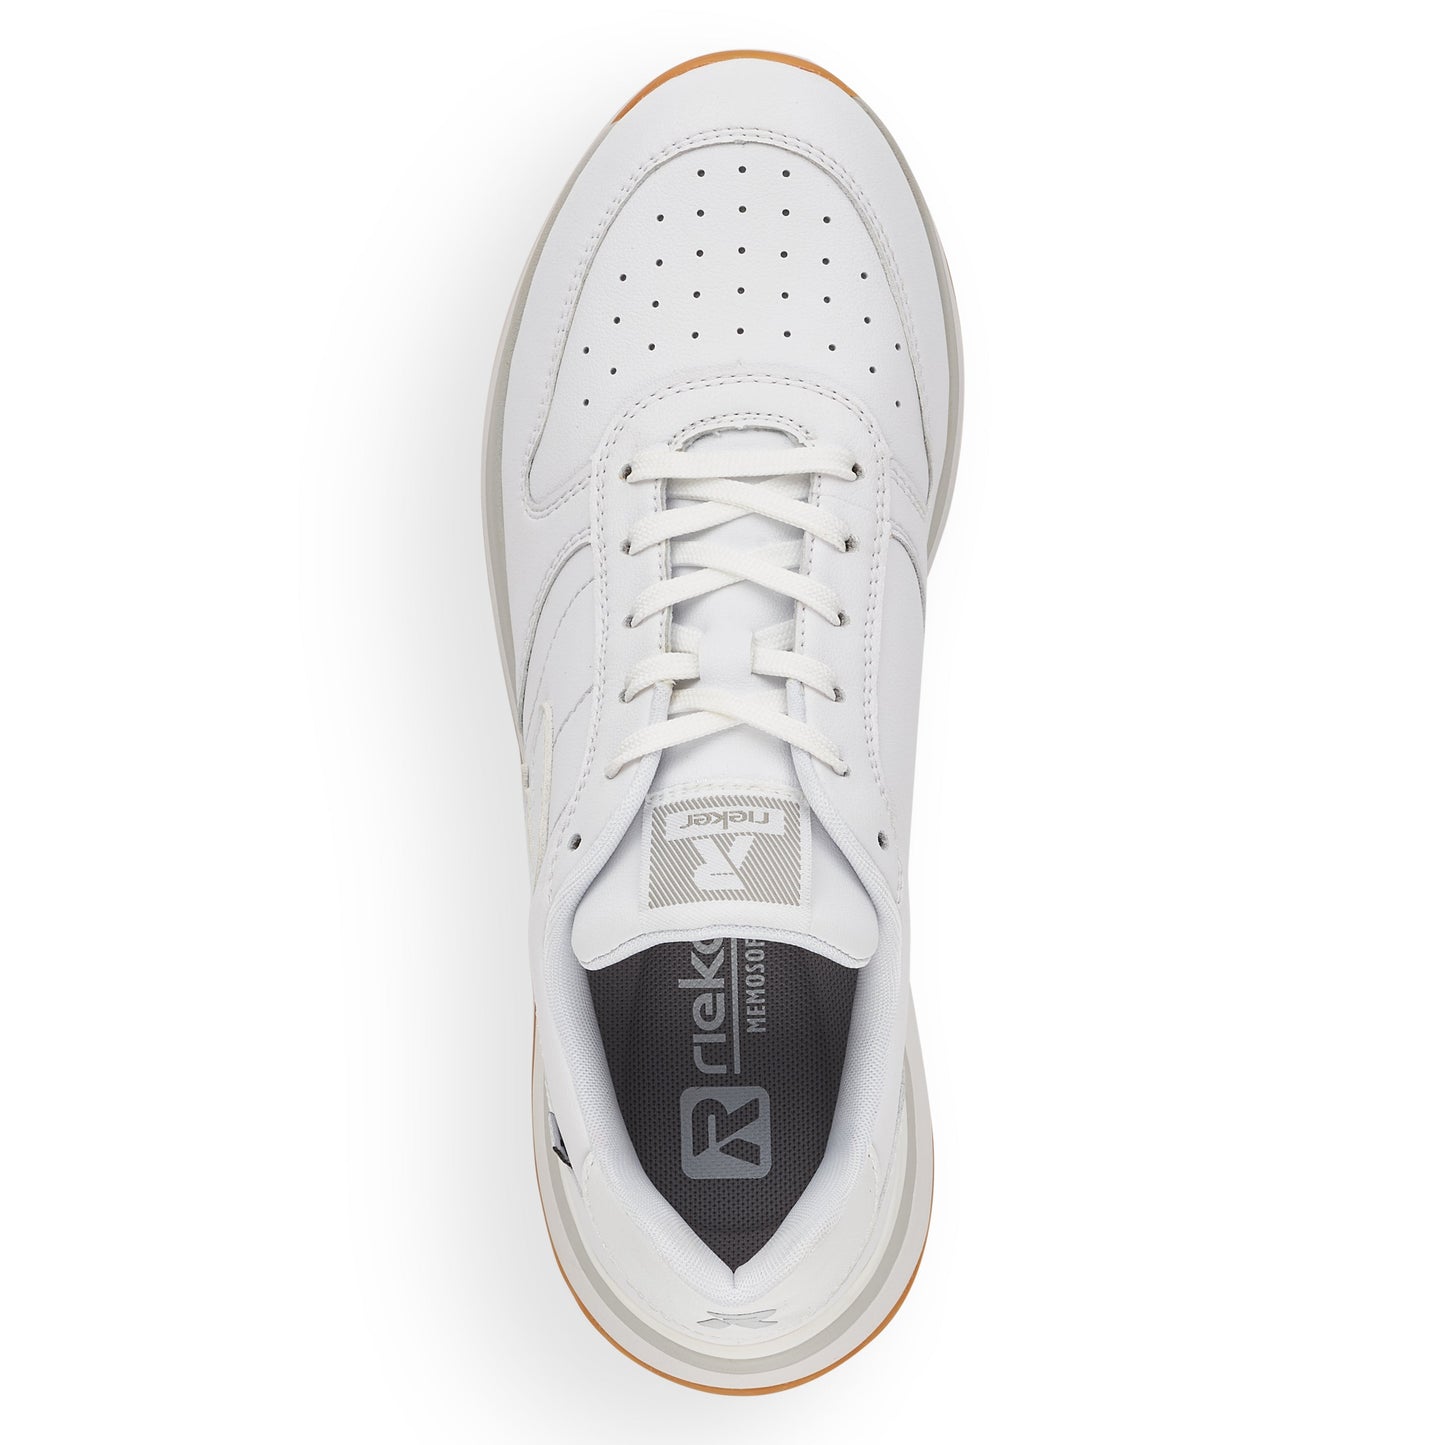 Rieker - Evolution Sneaker, 76-0899 - Hvid